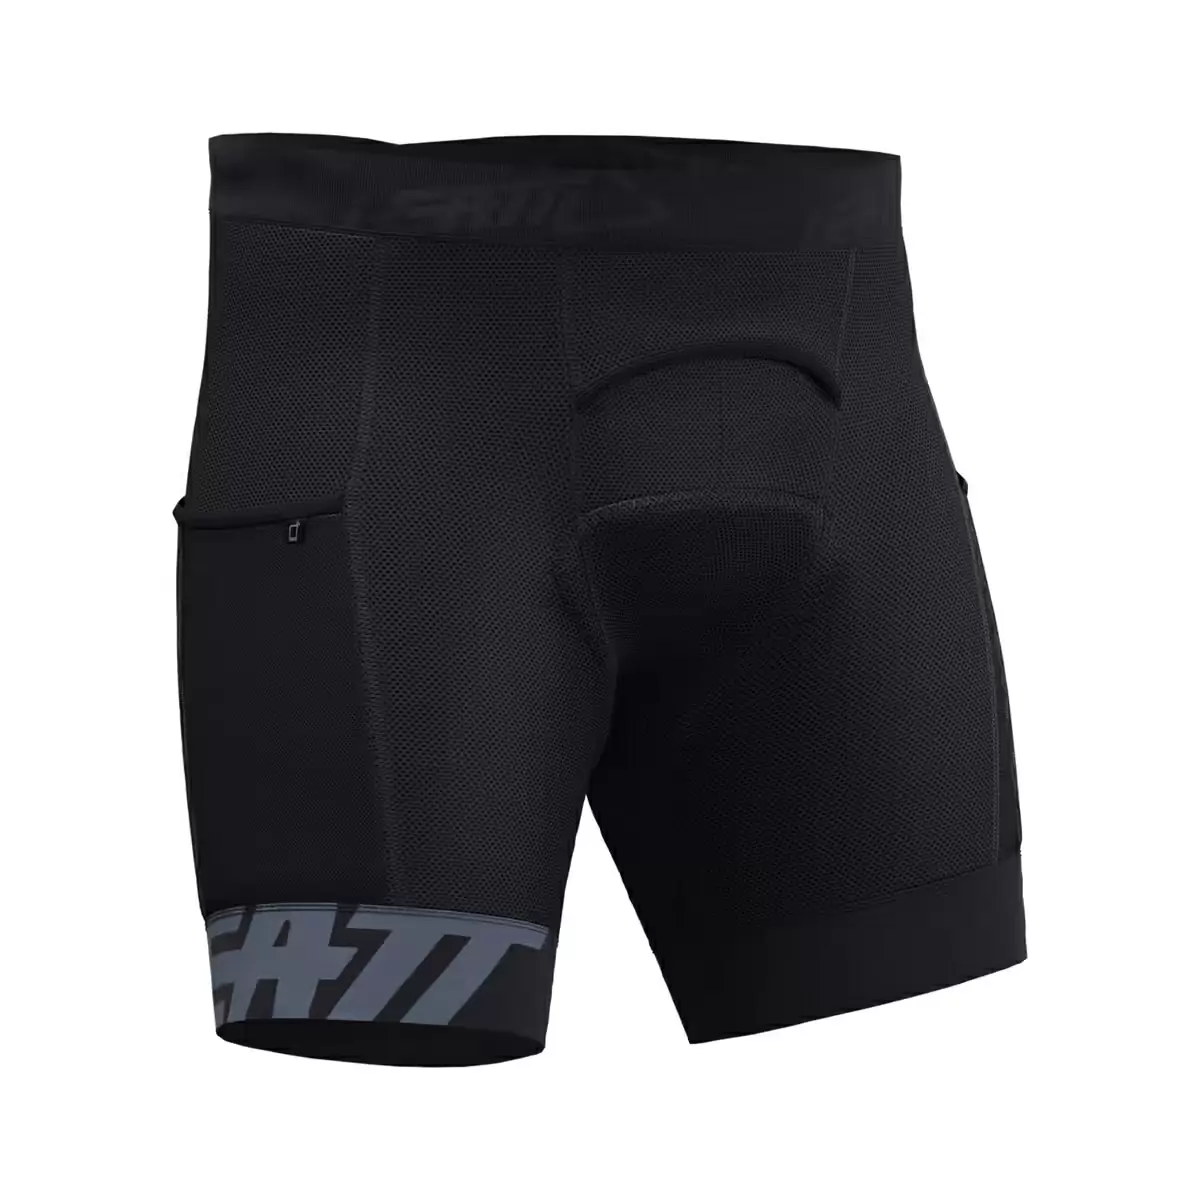 Pantaloncini intimi protettivi Short Liner MTB 3.0 nero taglia S (48) - image